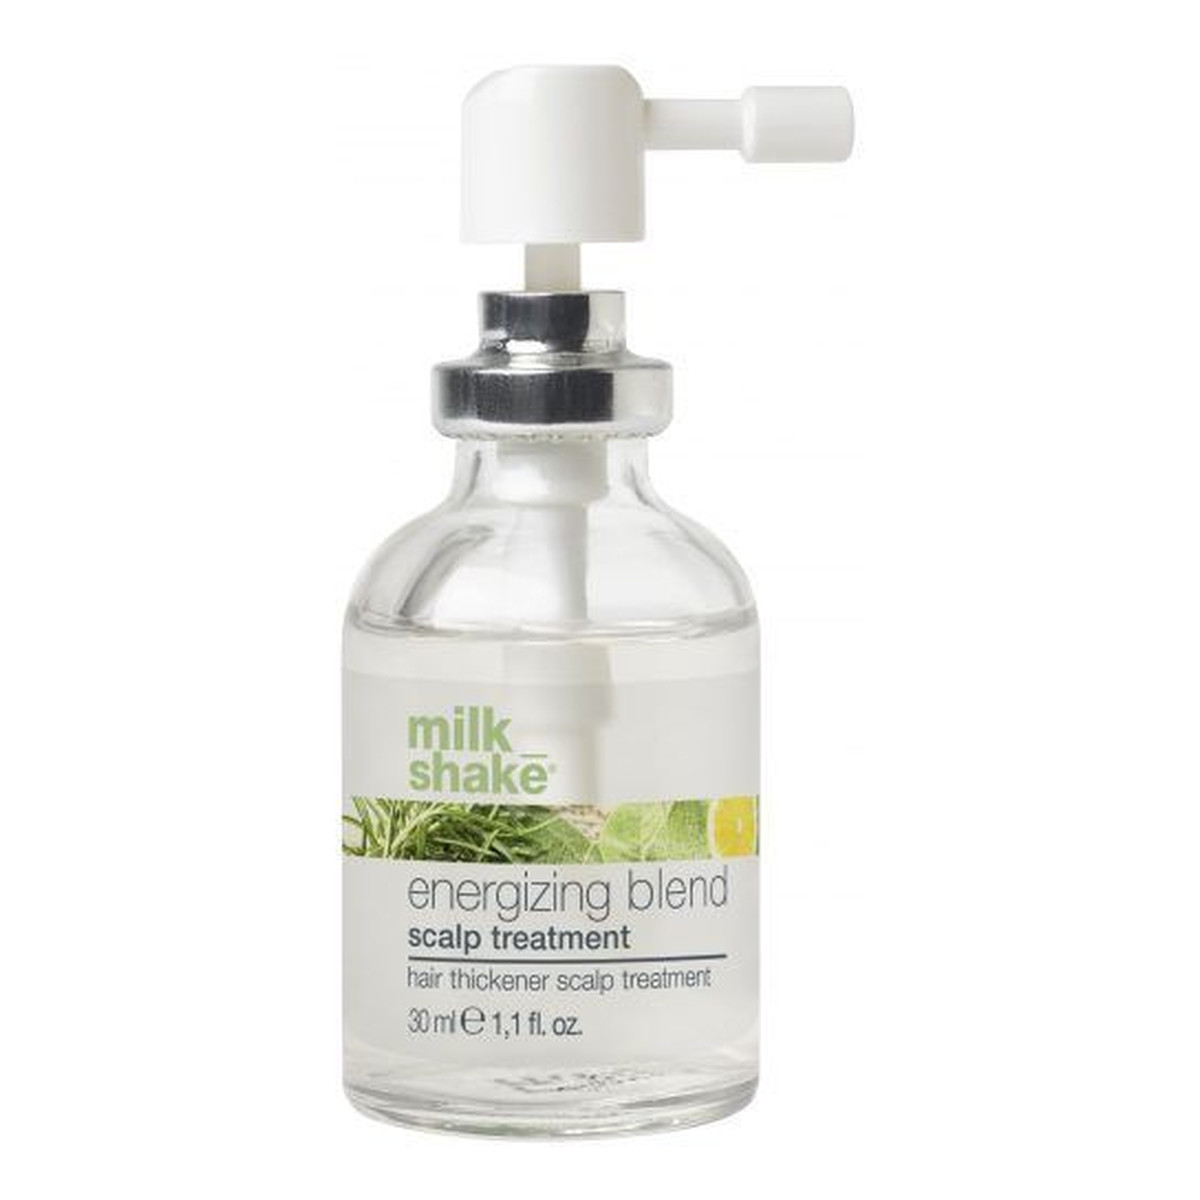 Milk Shake Energizing Blend pielęgnacja wzmacniająca na skórę głowy 30ml